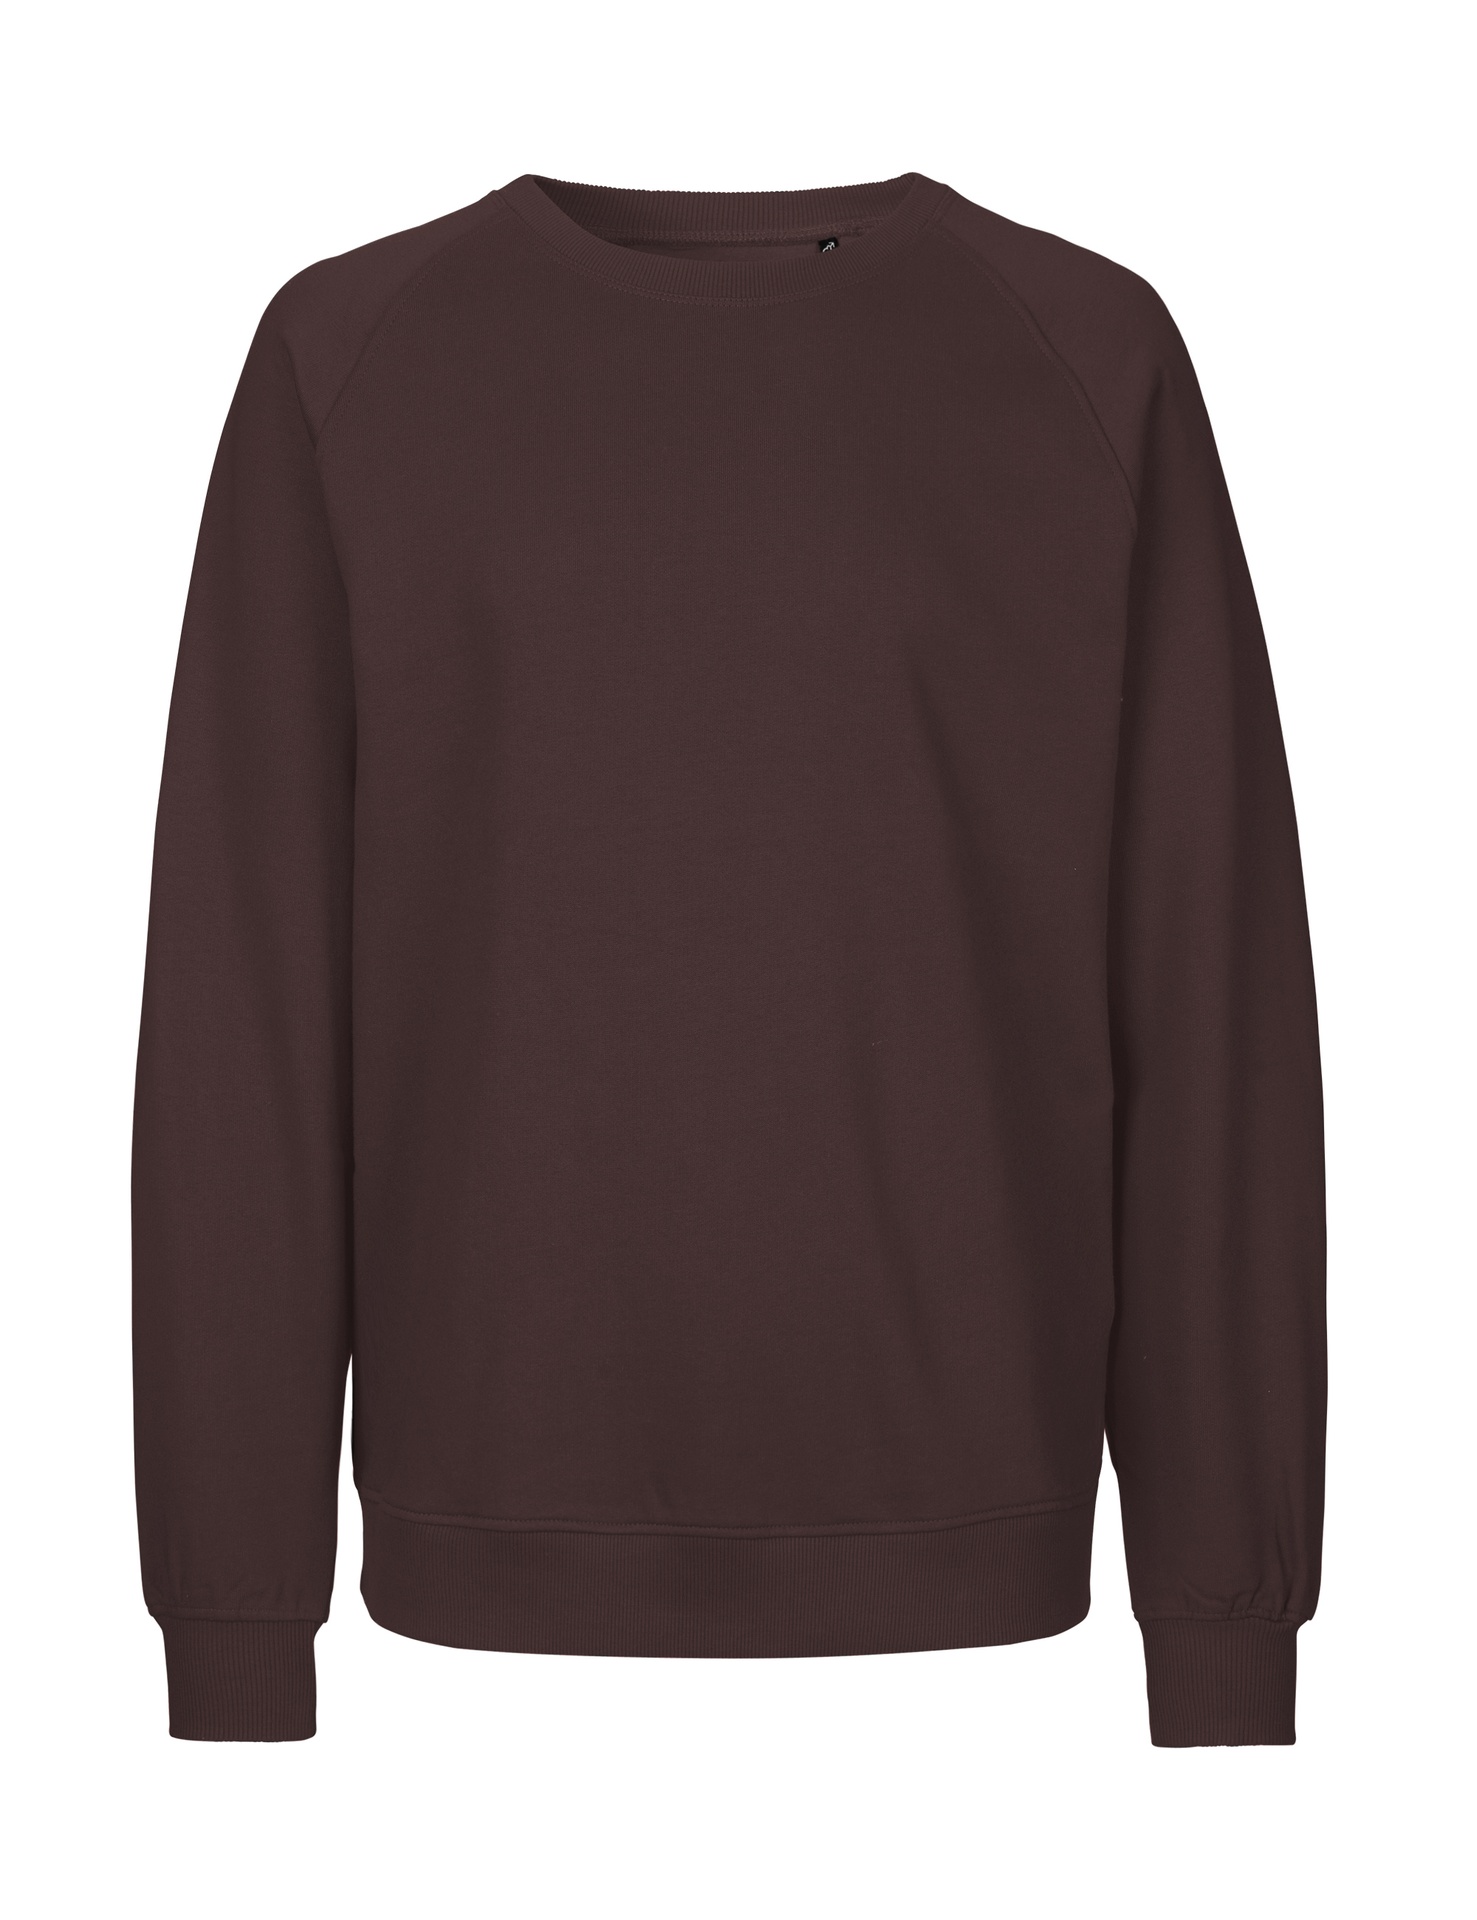 [PR/02810] Unisex Sweatshirt (Brown 37, 2XL)